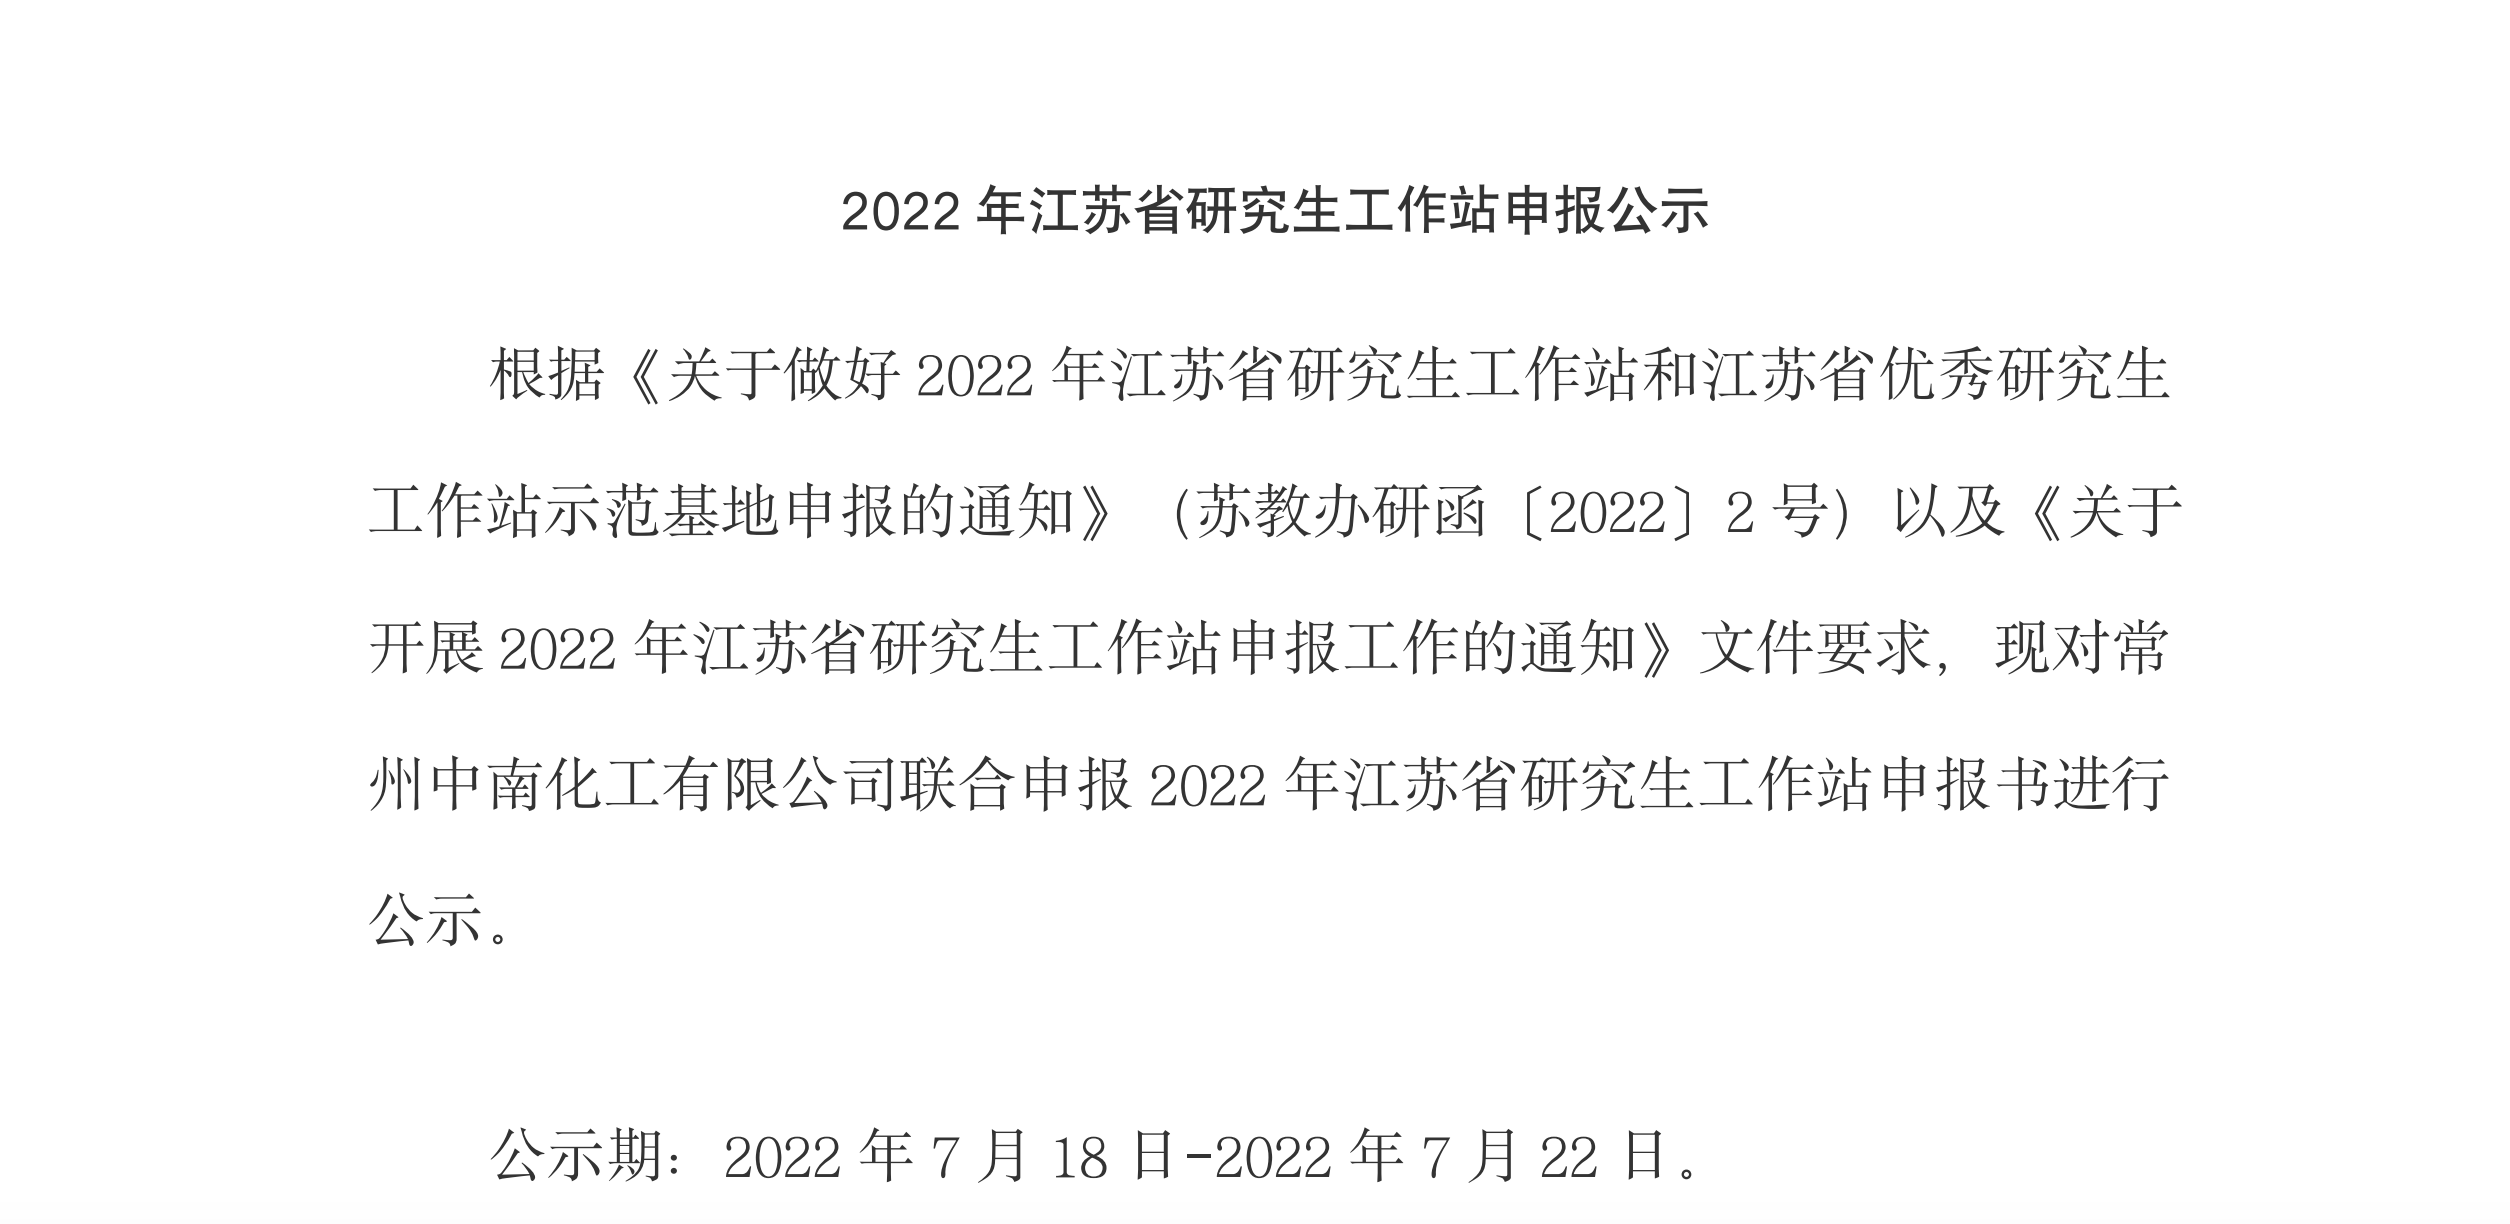 2022年江蘇省研究生工作站申報公示公示期：2022年7月18日-2022年7月22日